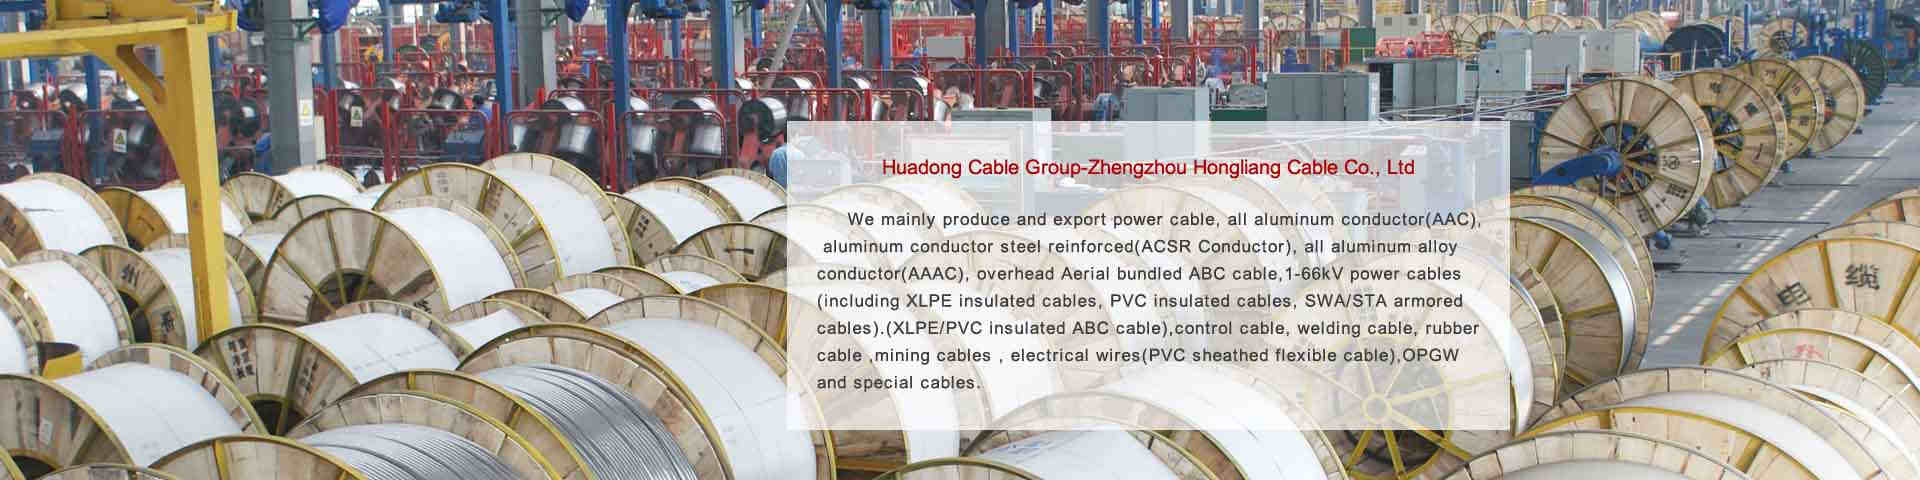 mv abc cable manufacturer